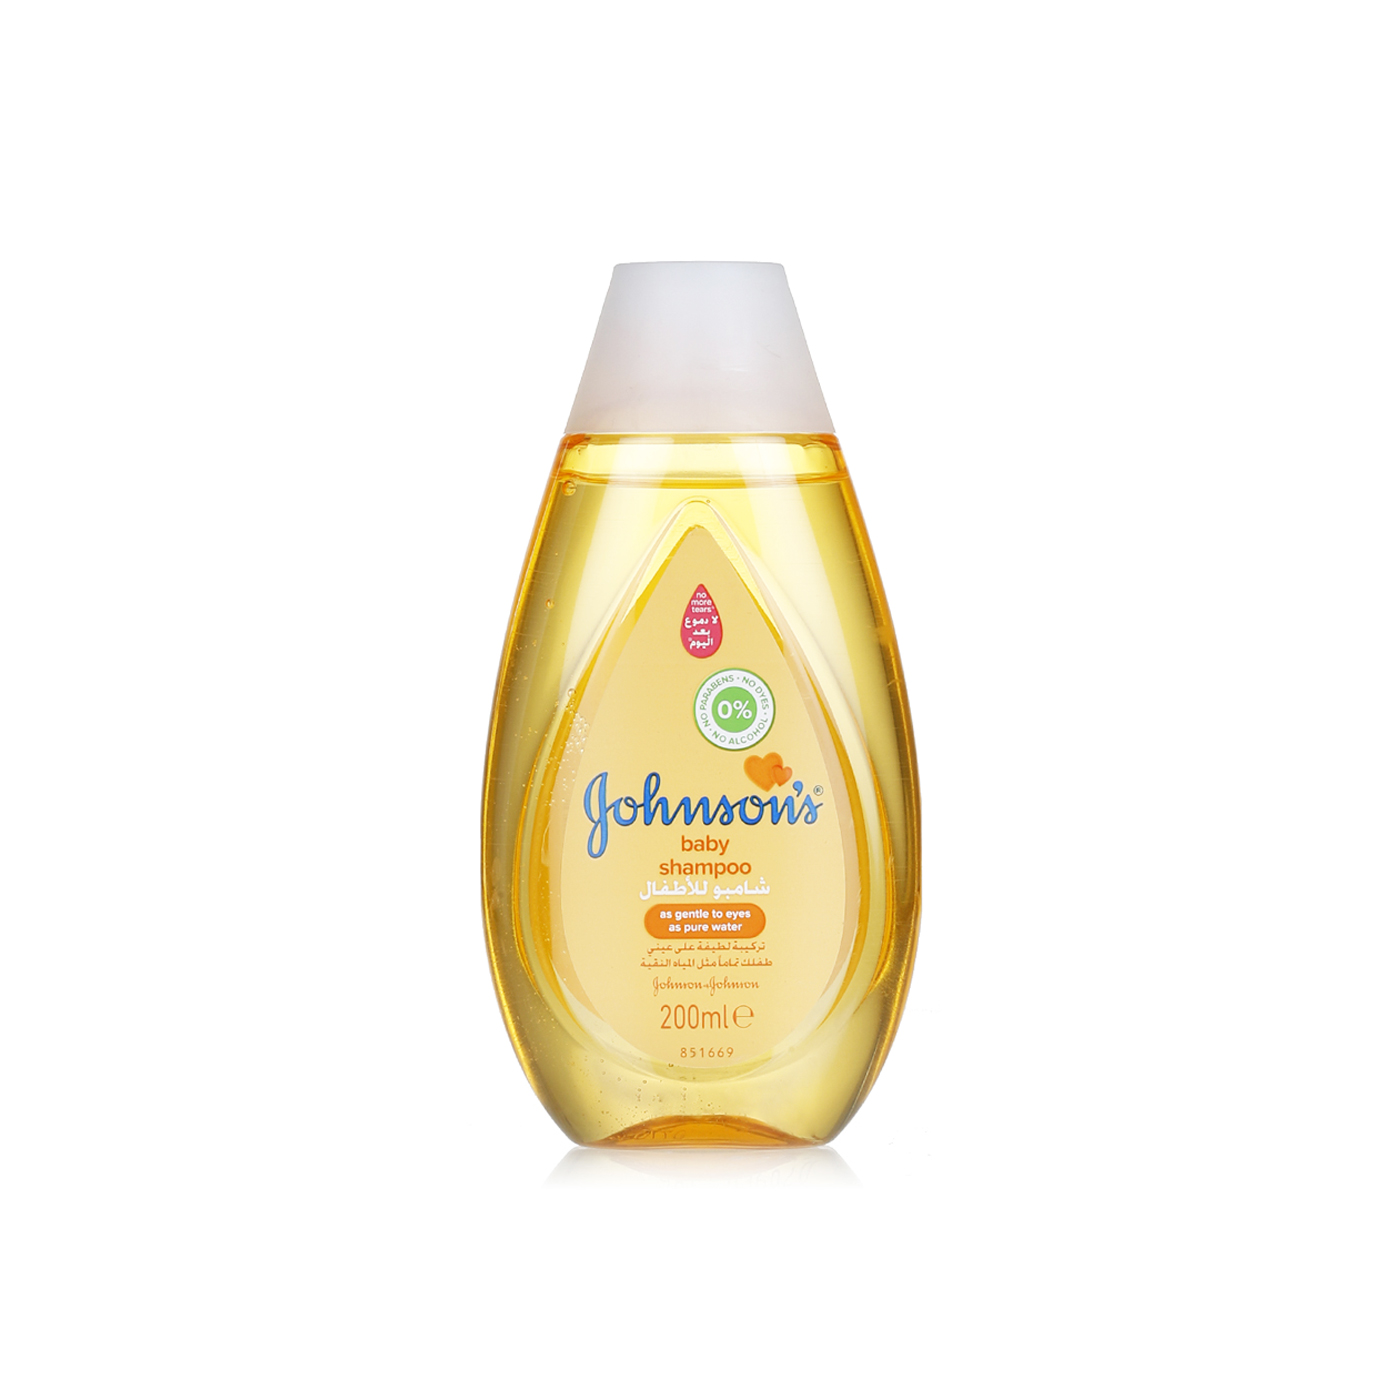 Johnsons gold baby shampoo 200ml - Spinneys UAE